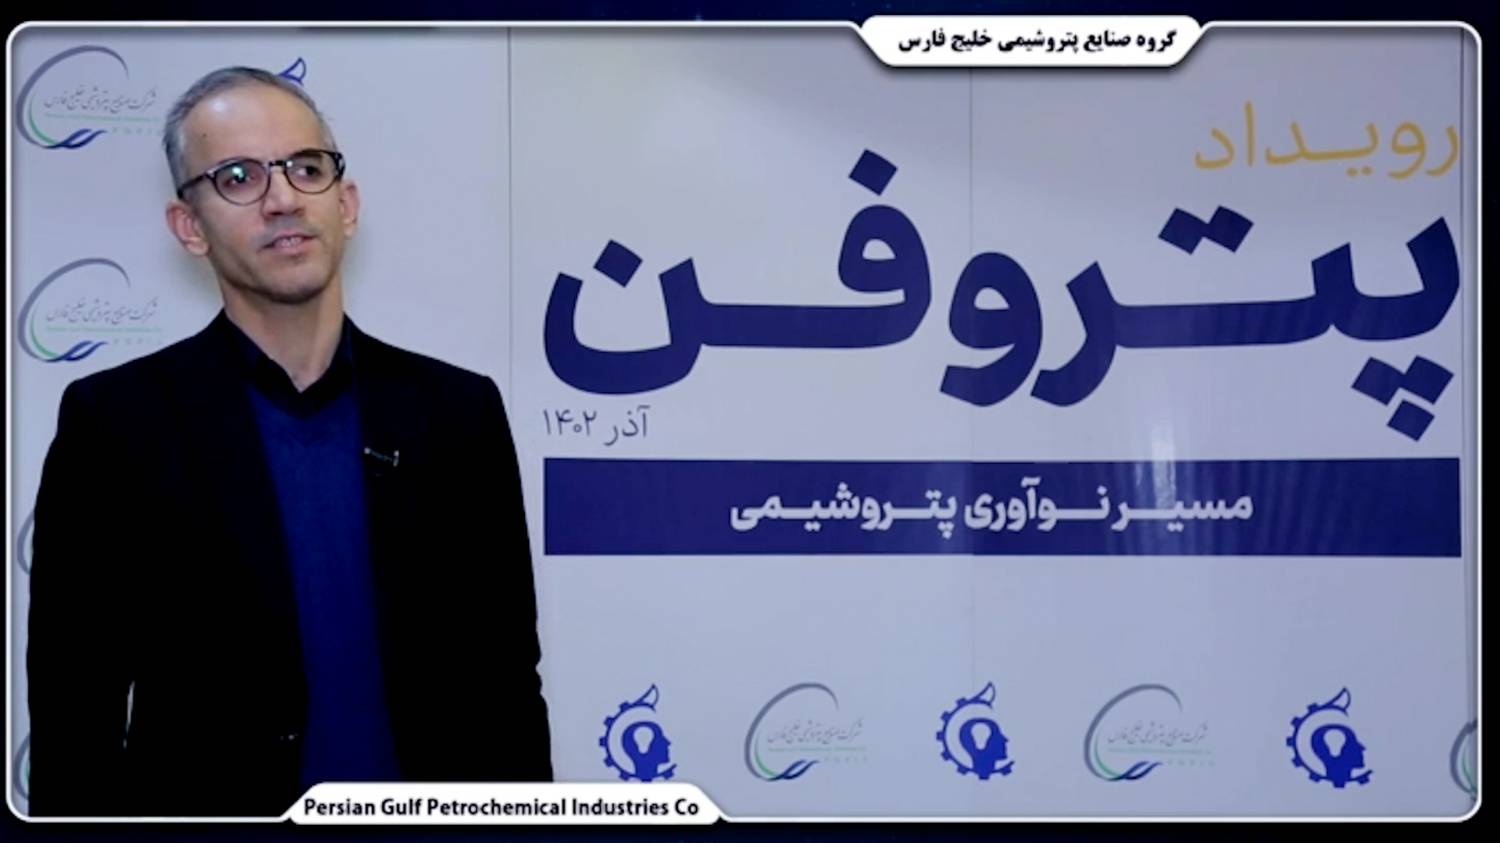 مهندس صالح احمدی/ مدیرعامل پتروشیمی خوزستان